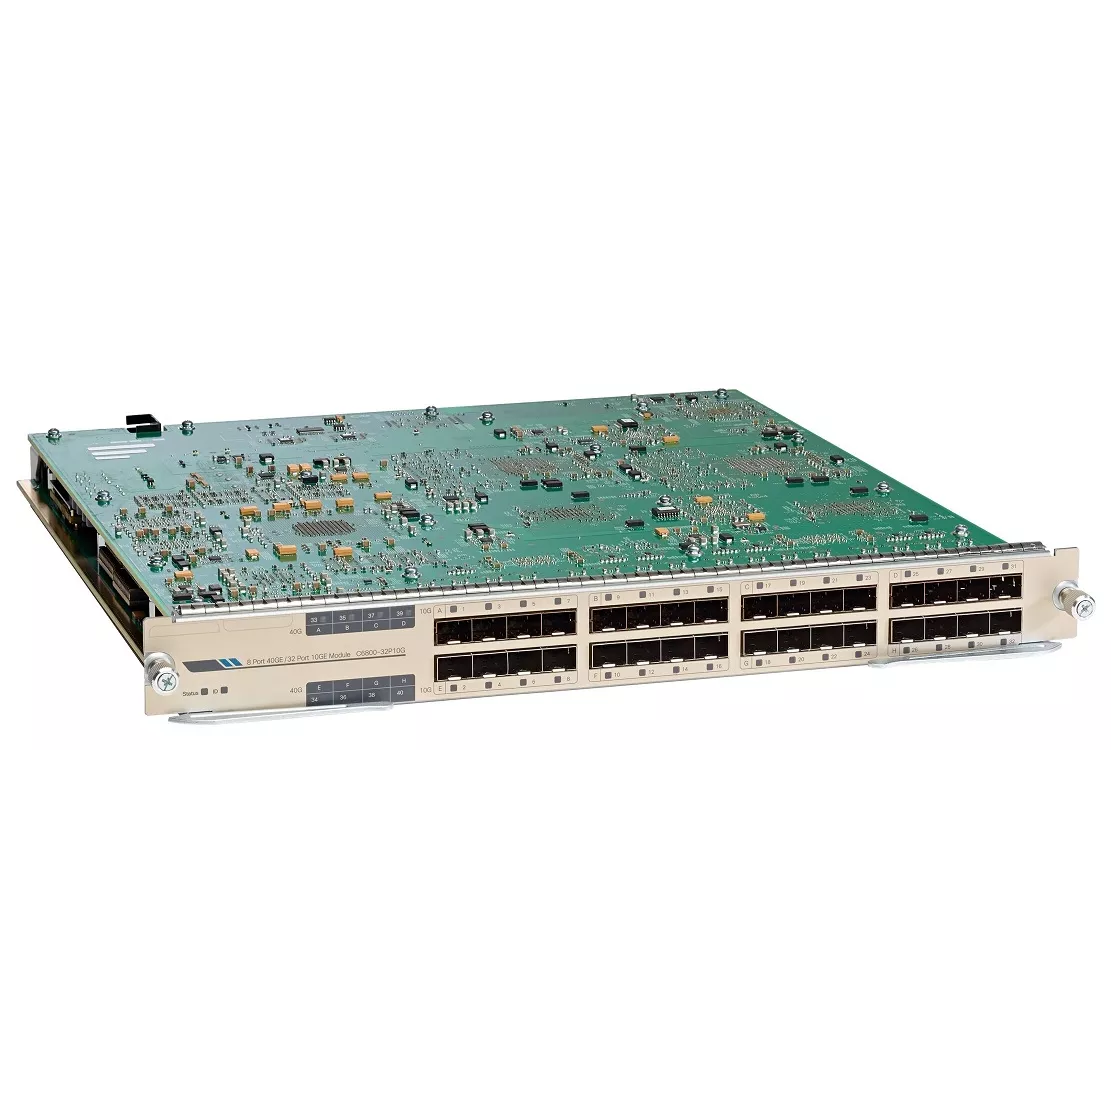 Модуль Cisco C6800-32P10G